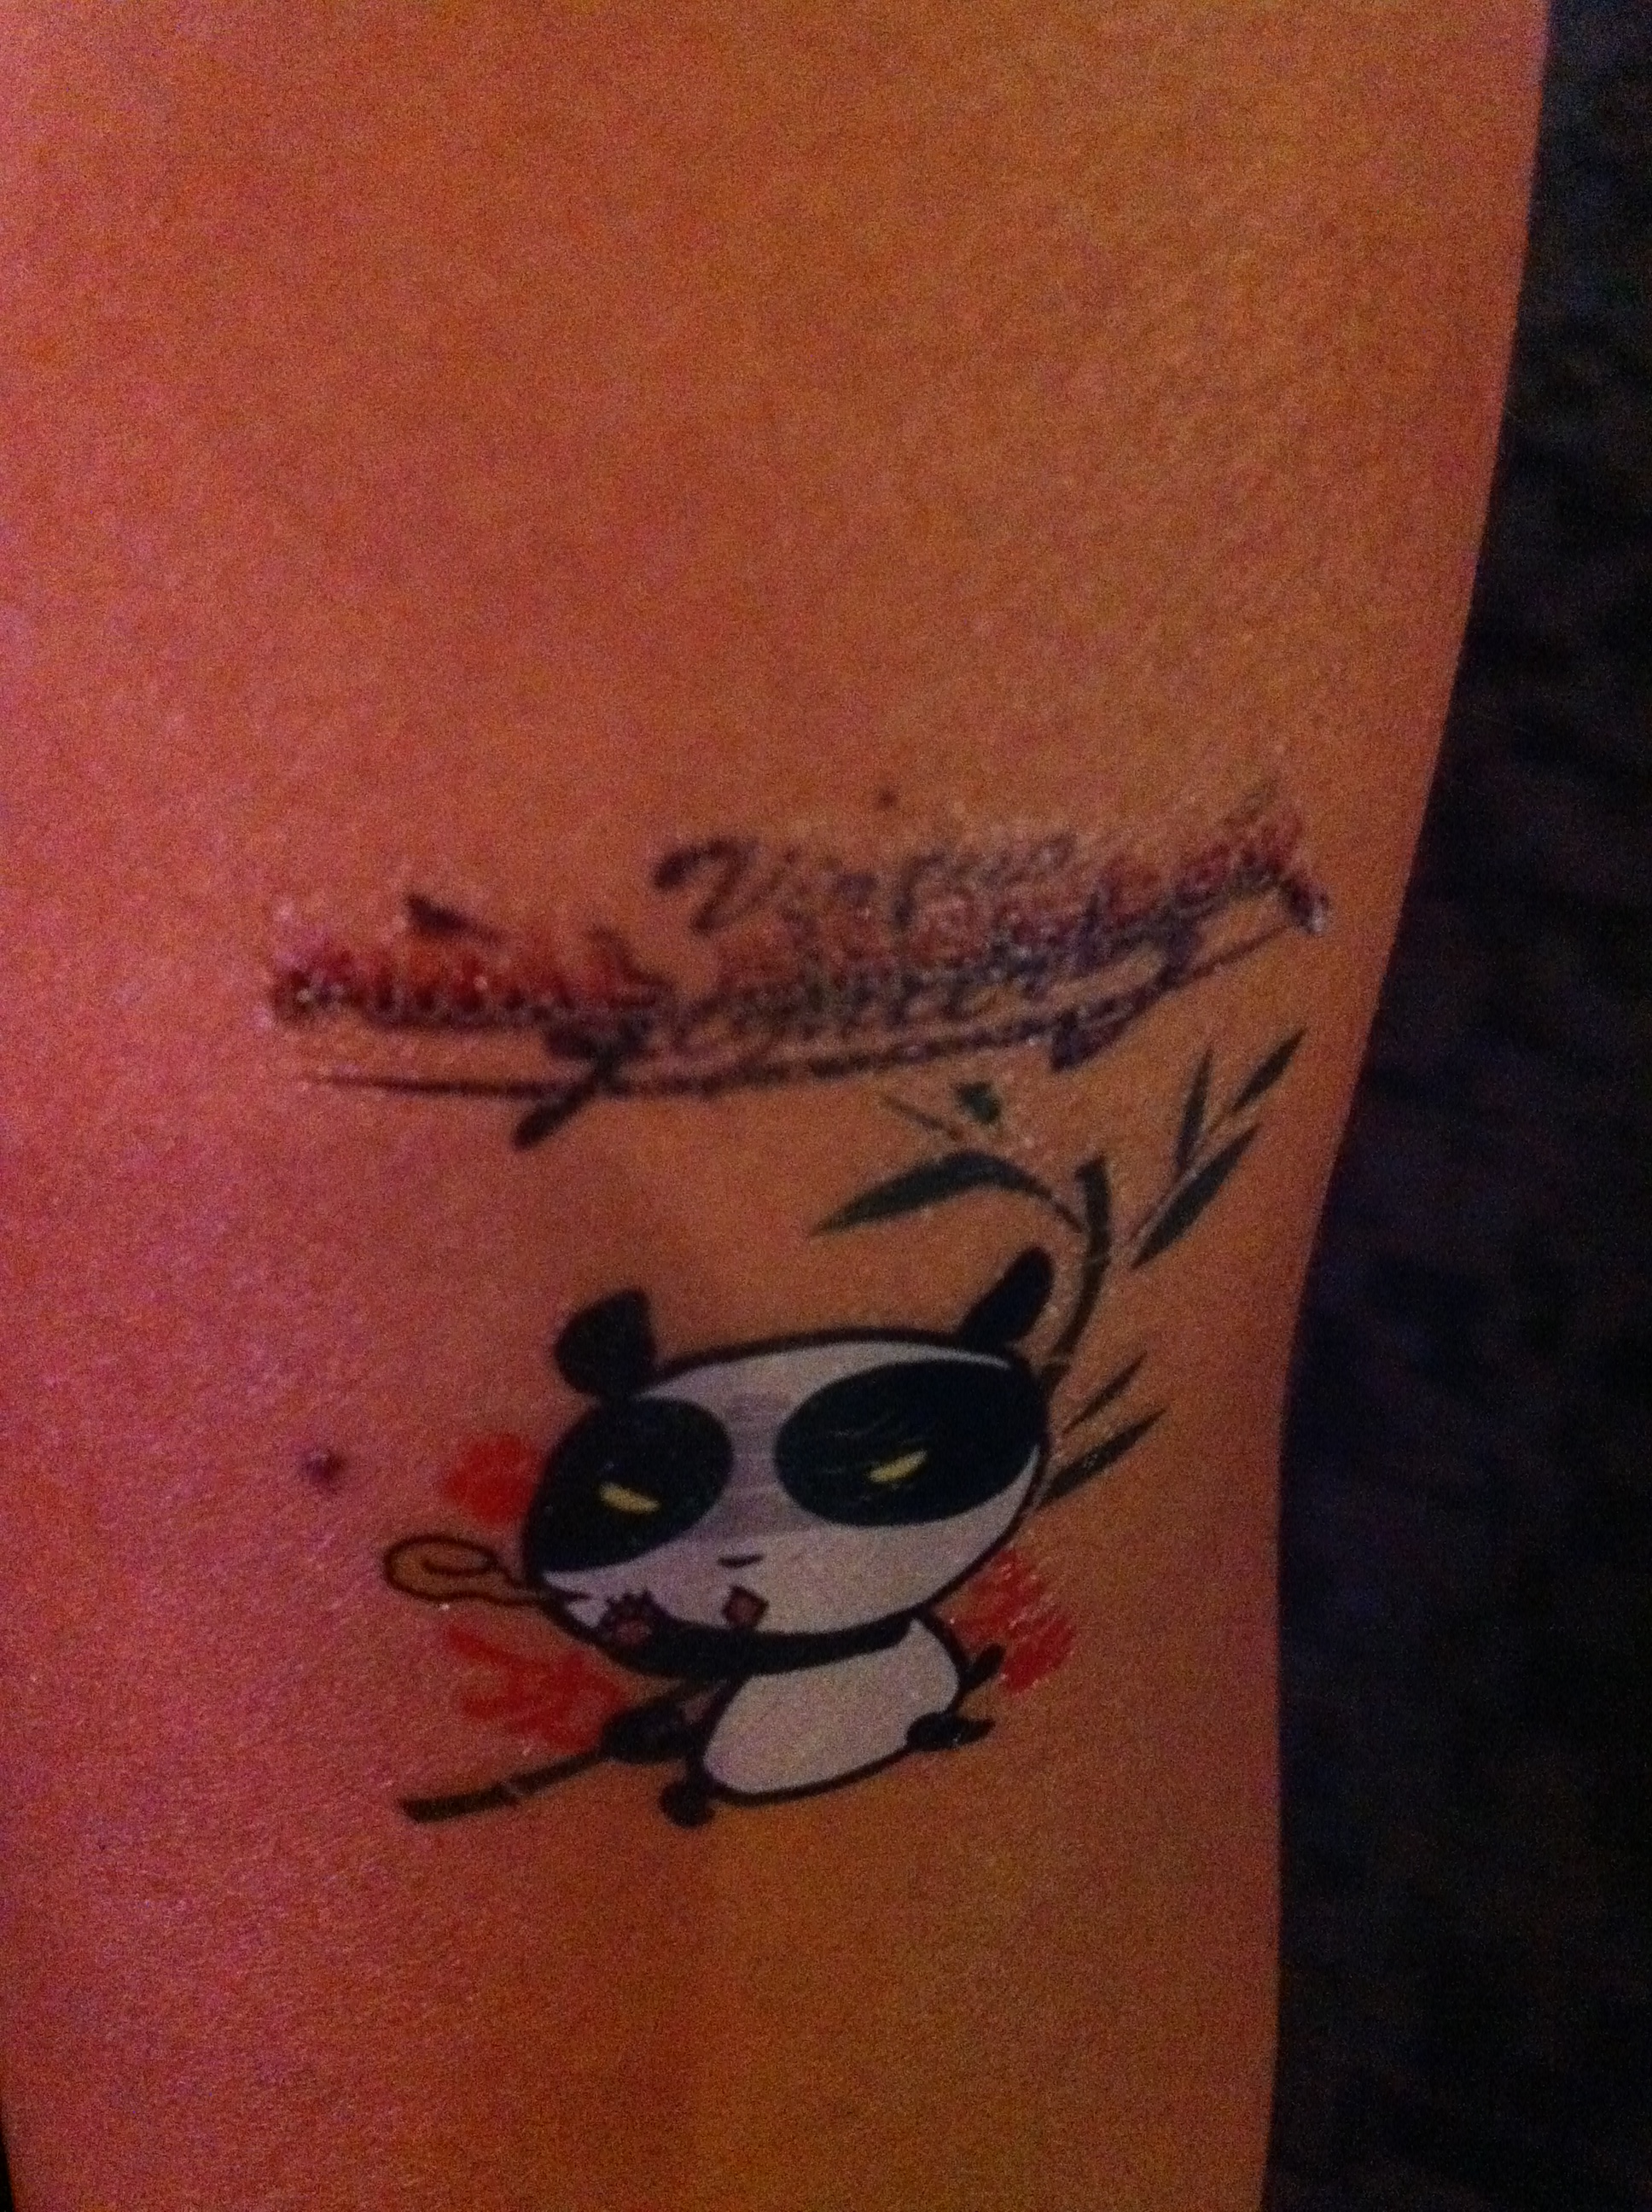 Got a free cute panda tattoo